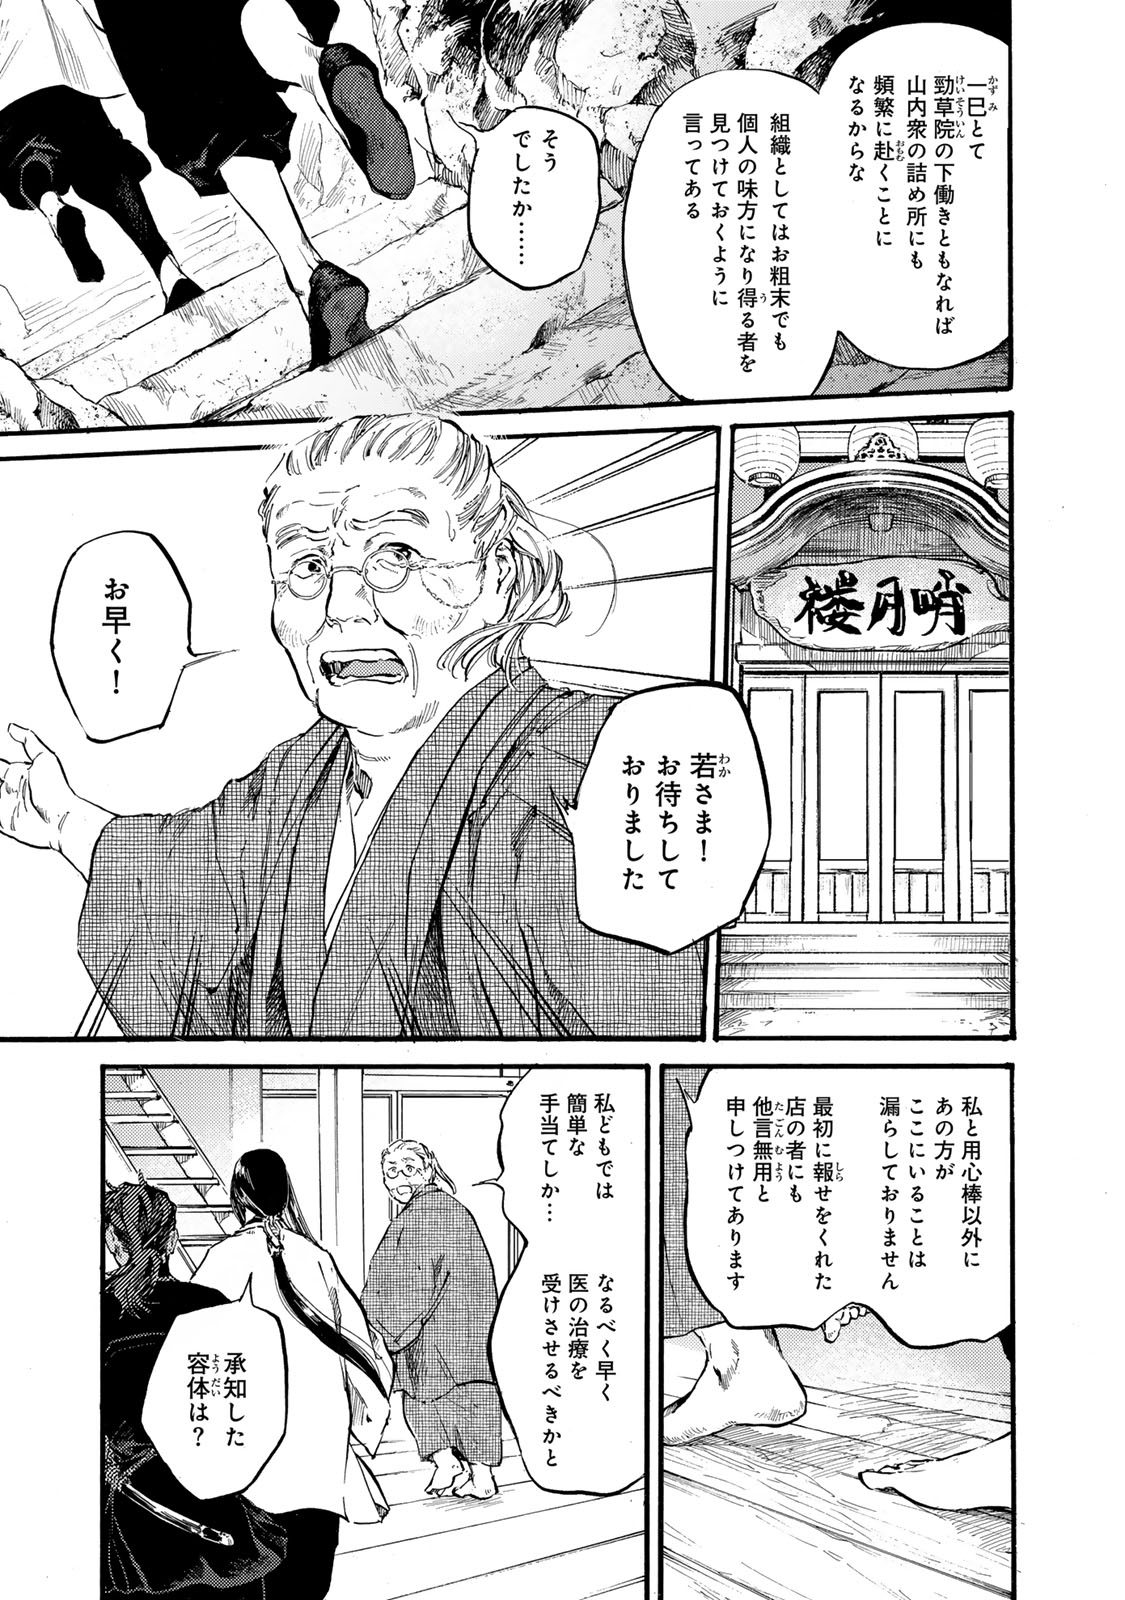 Karasu wa Aruji wo Erabanai - Chapter 40 - Page 3